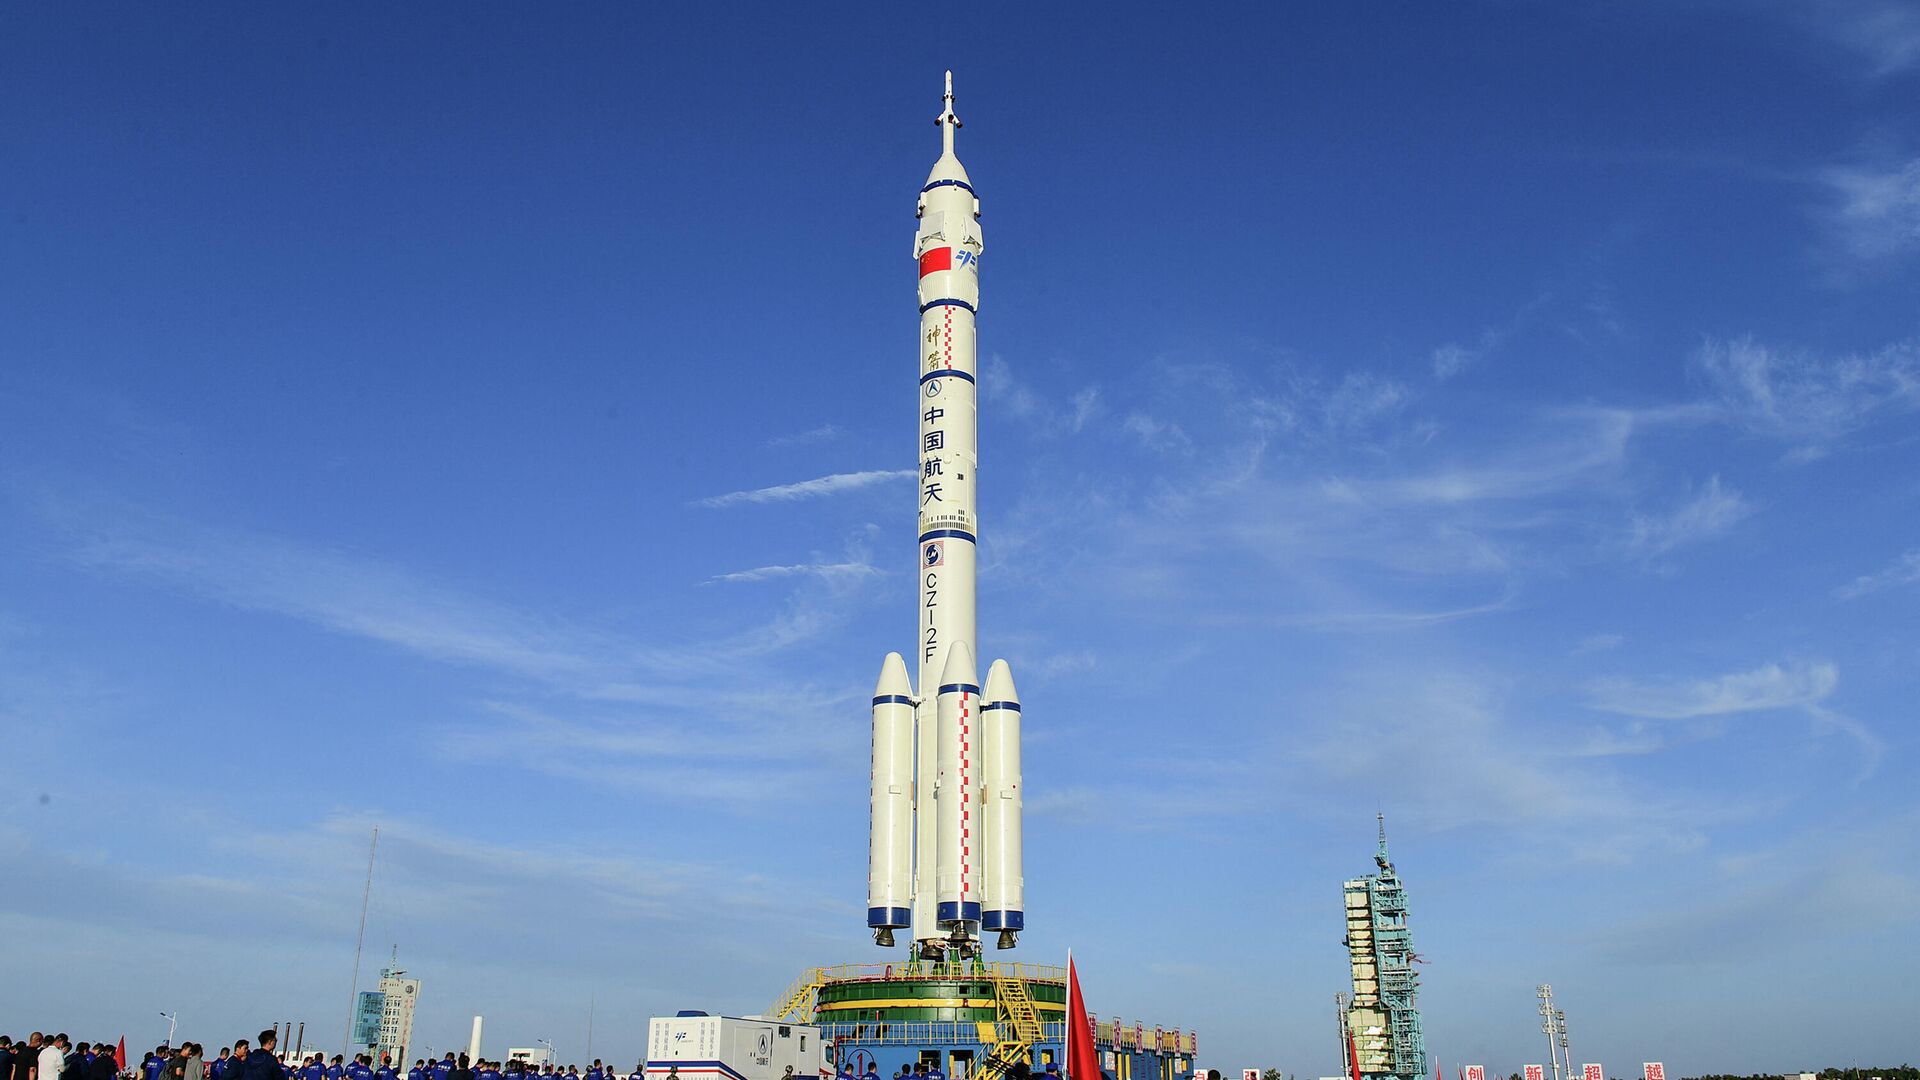 Пилотируемый космический корабль Шэньчжоу-12 и ракета-носитель Чанчжэн-2F на космодроме Цзюцюань - РИА Новости, 1920, 11.06.2021